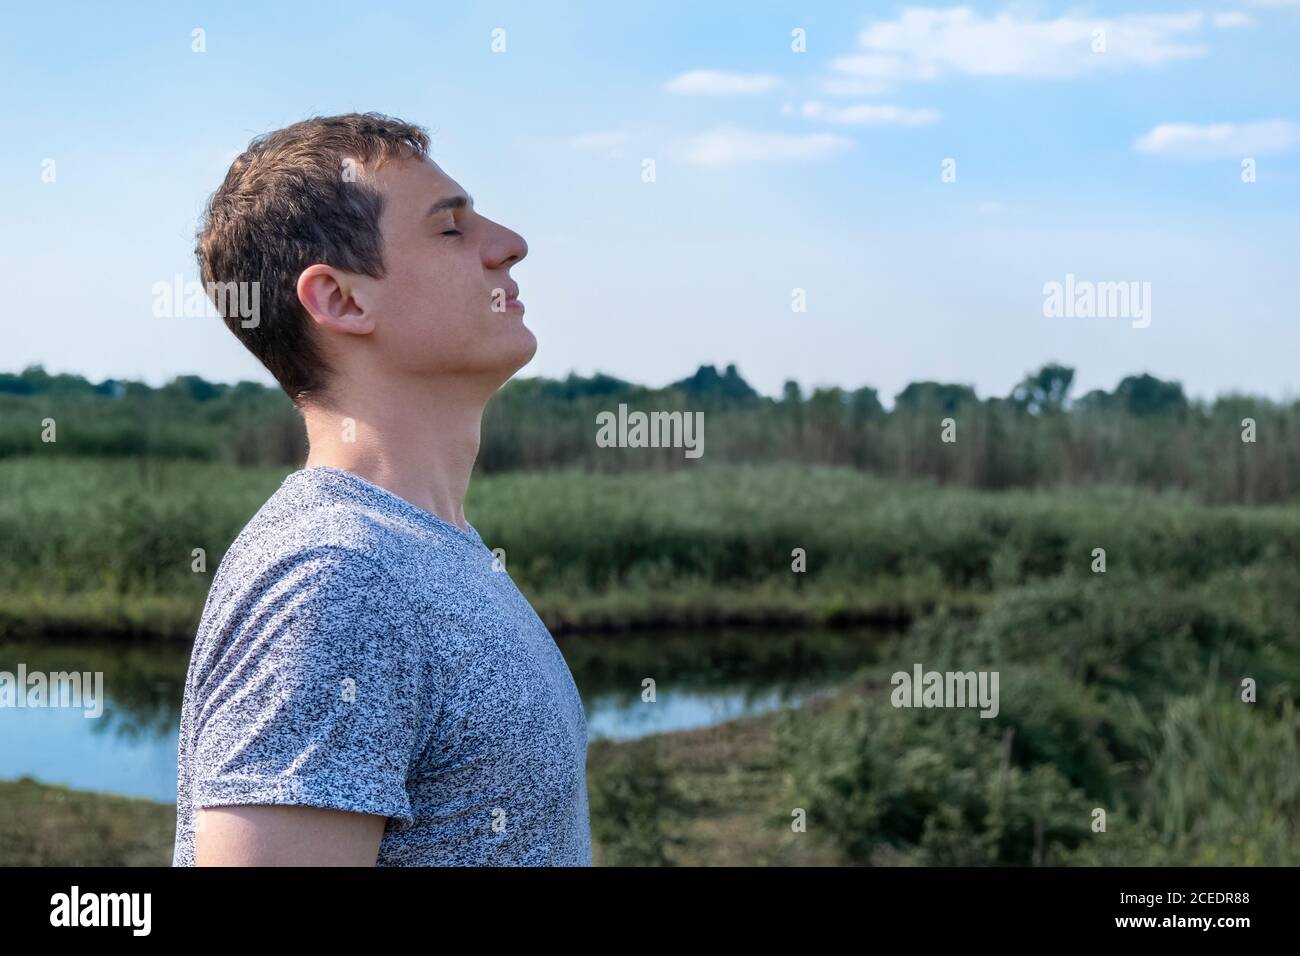 Uomo adulto rilassato respirare aria fresca all'aperto con lago e. campo in background Foto Stock